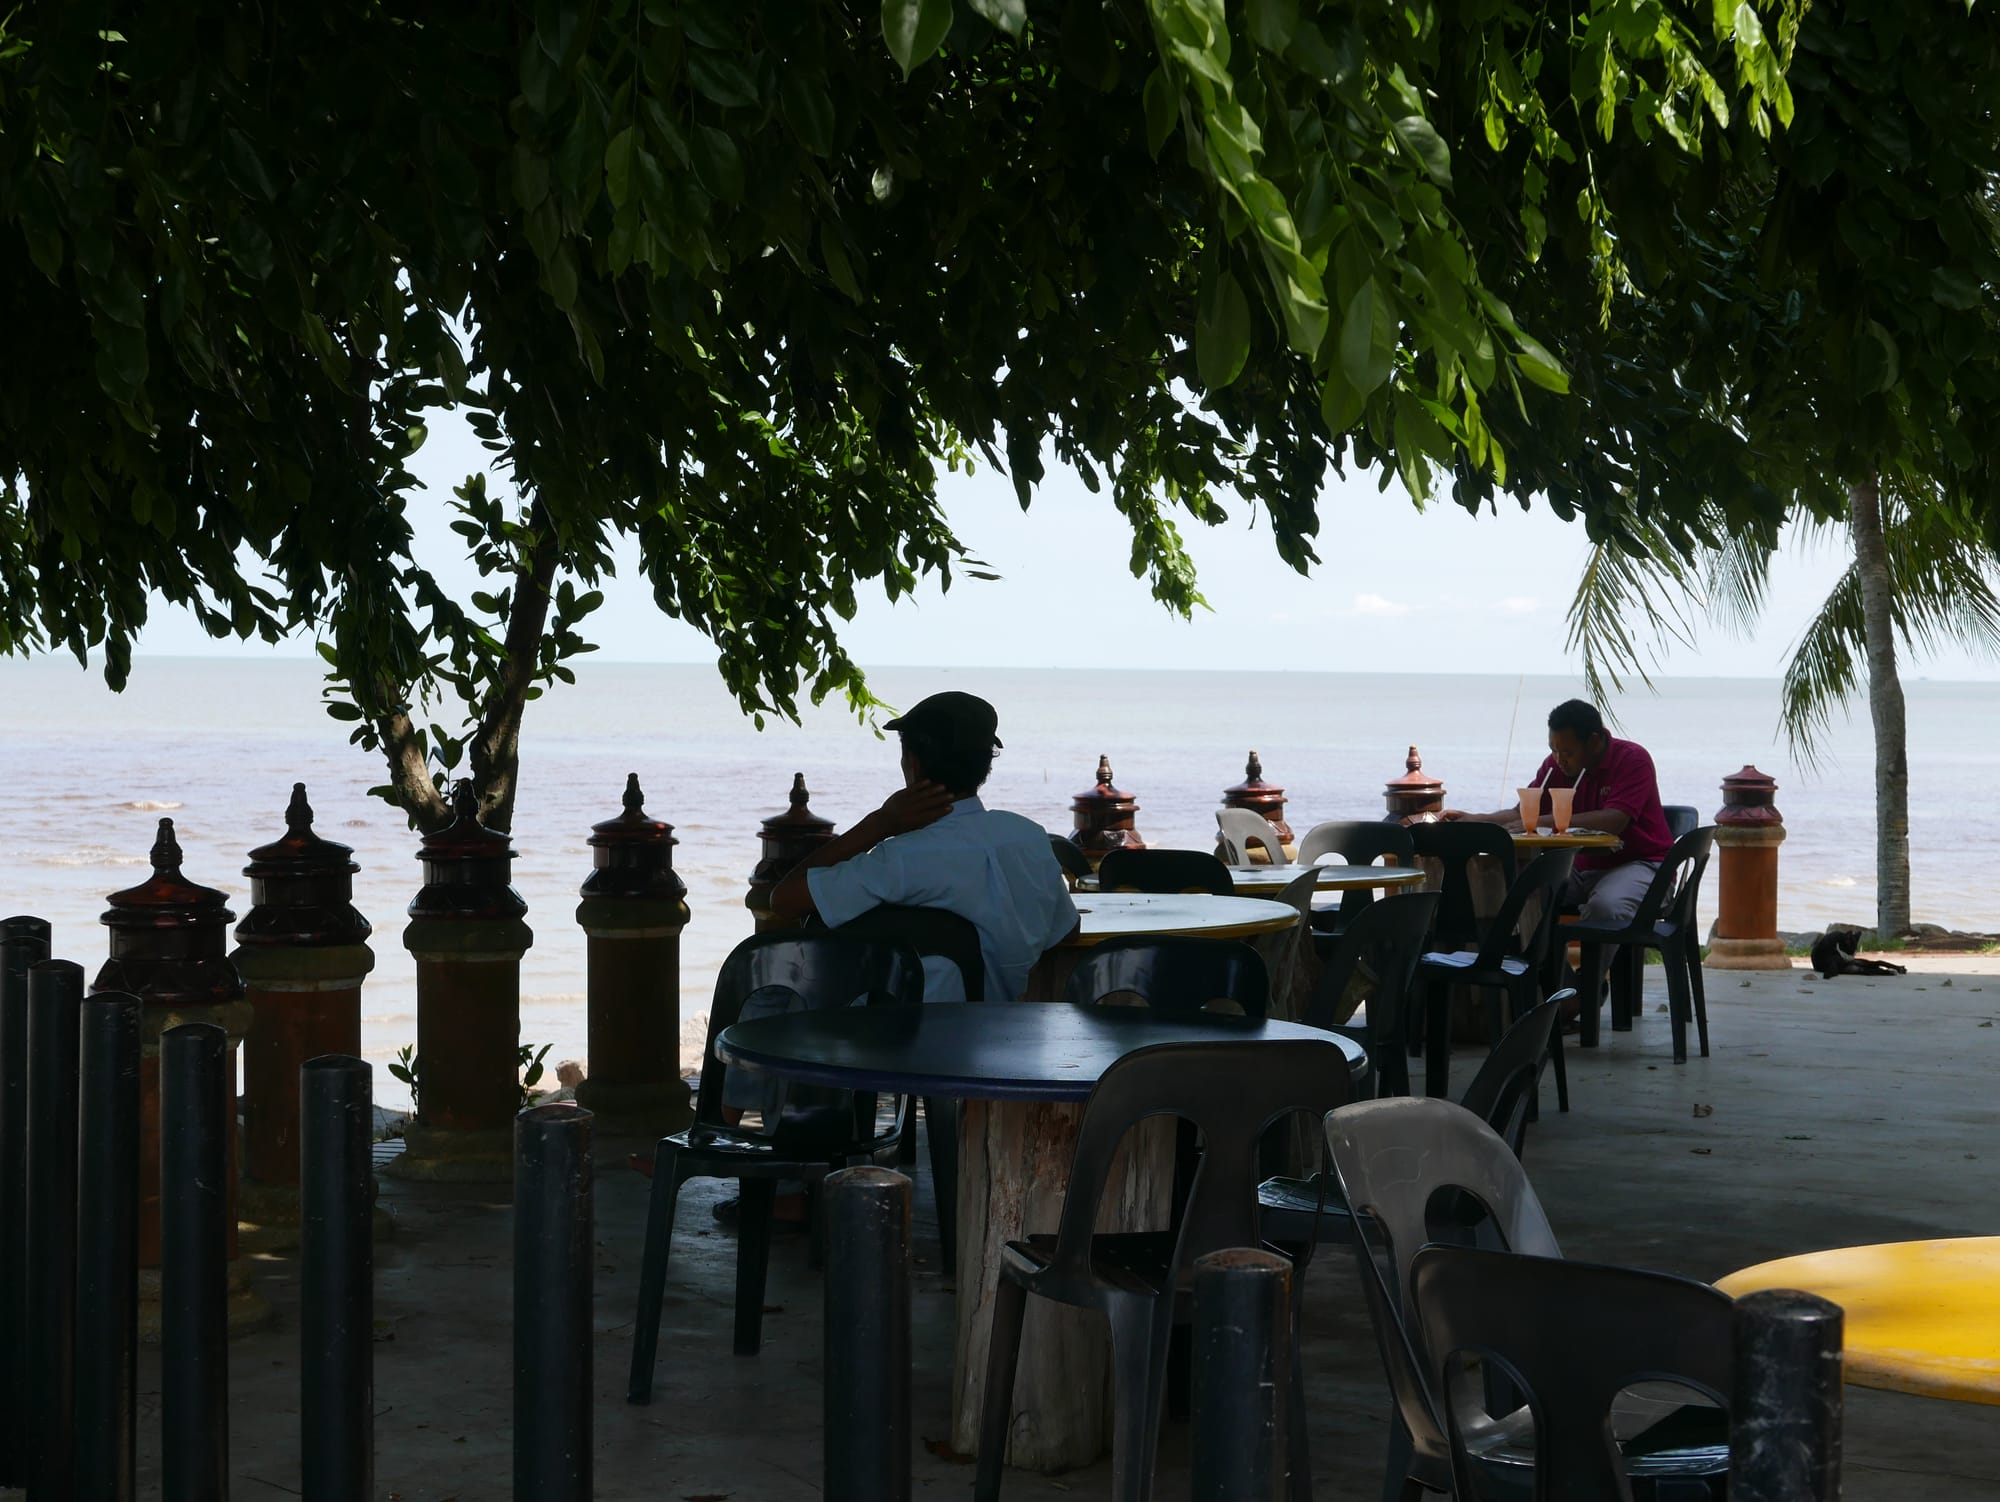 Photo by Author — relaxing at the café near the Muzium Bugis, Pontian Besar, Johor, Malaysia